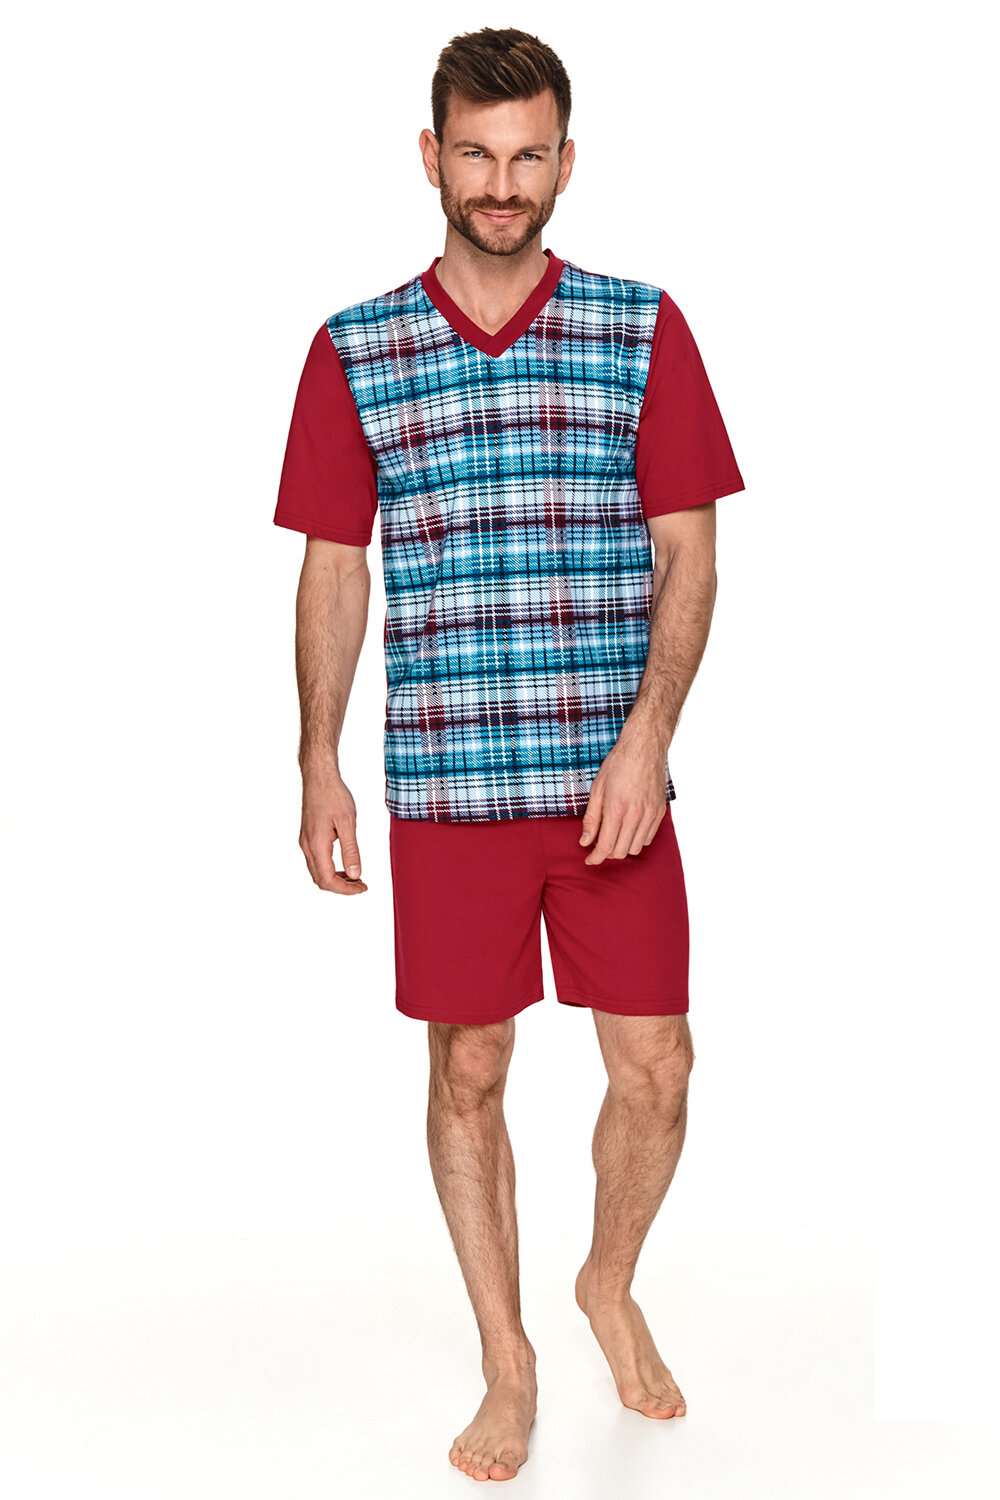 Пижама мужская TARO Anton 2733-2734-2735-01, футболка и шорты, красный, хлопок 100% (Размер: L)